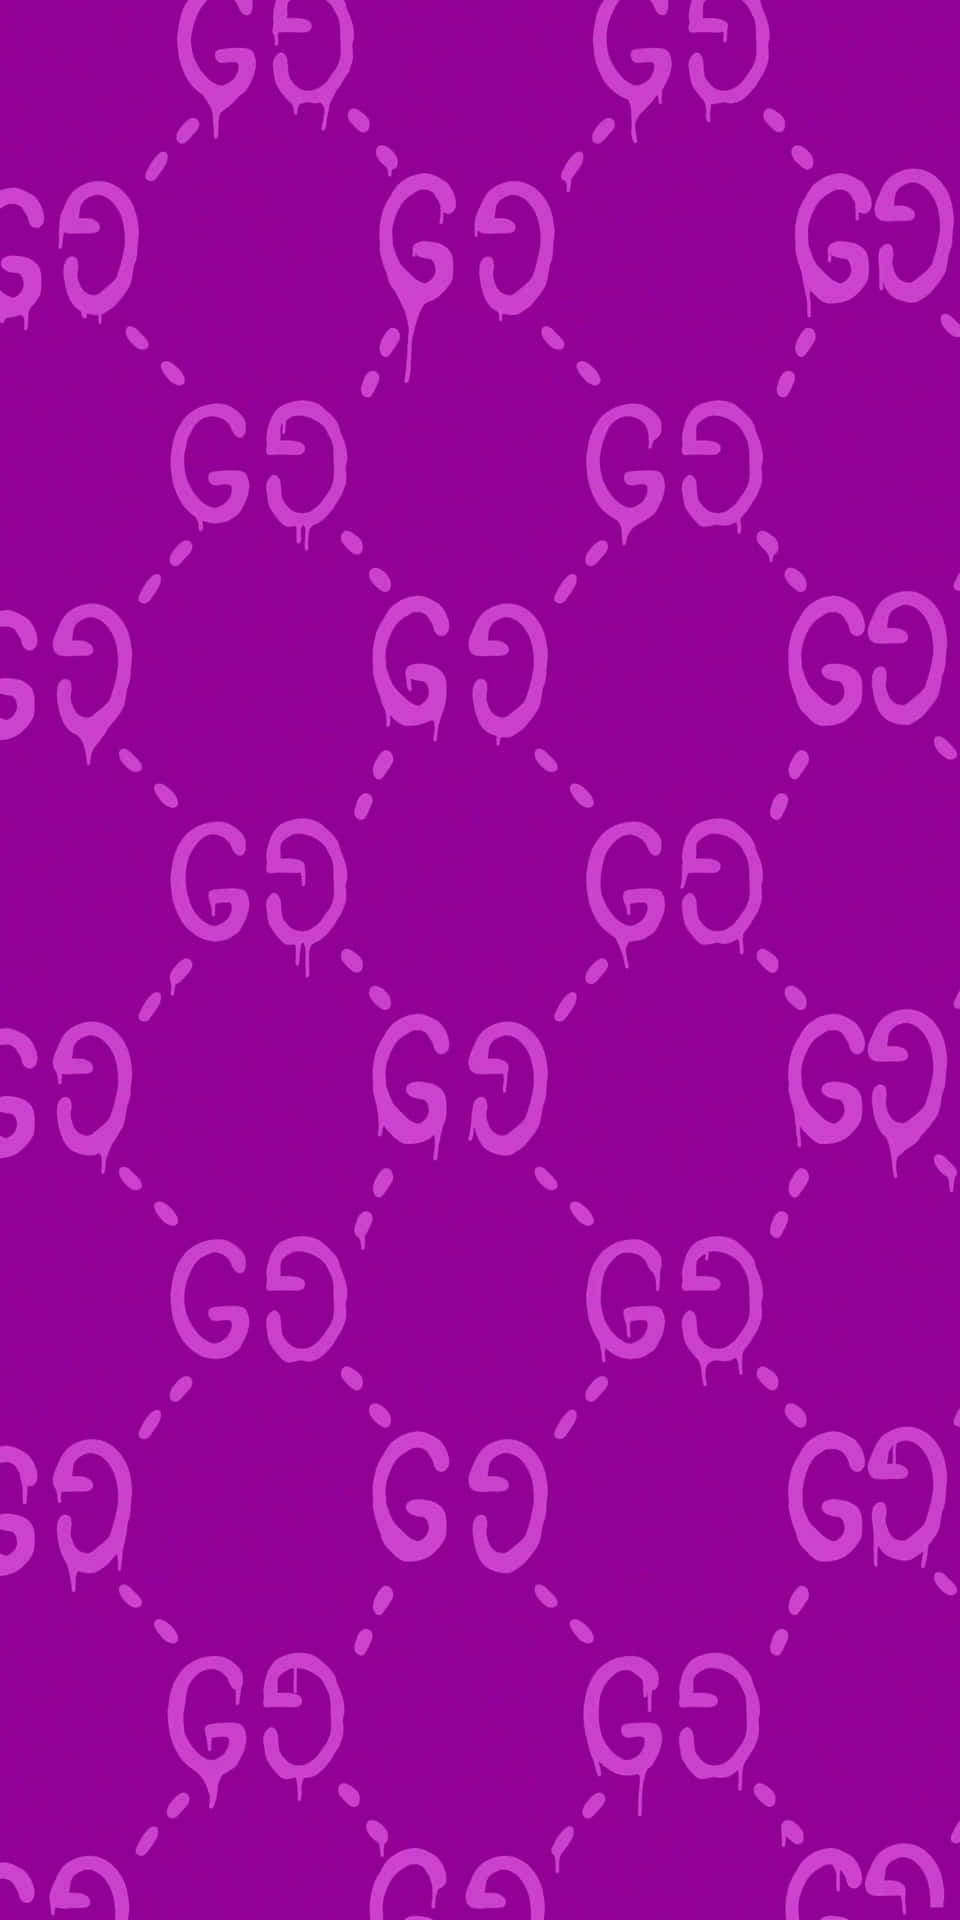 Einlila Hintergrund Mit Den Buchstaben G Und G. Wallpaper